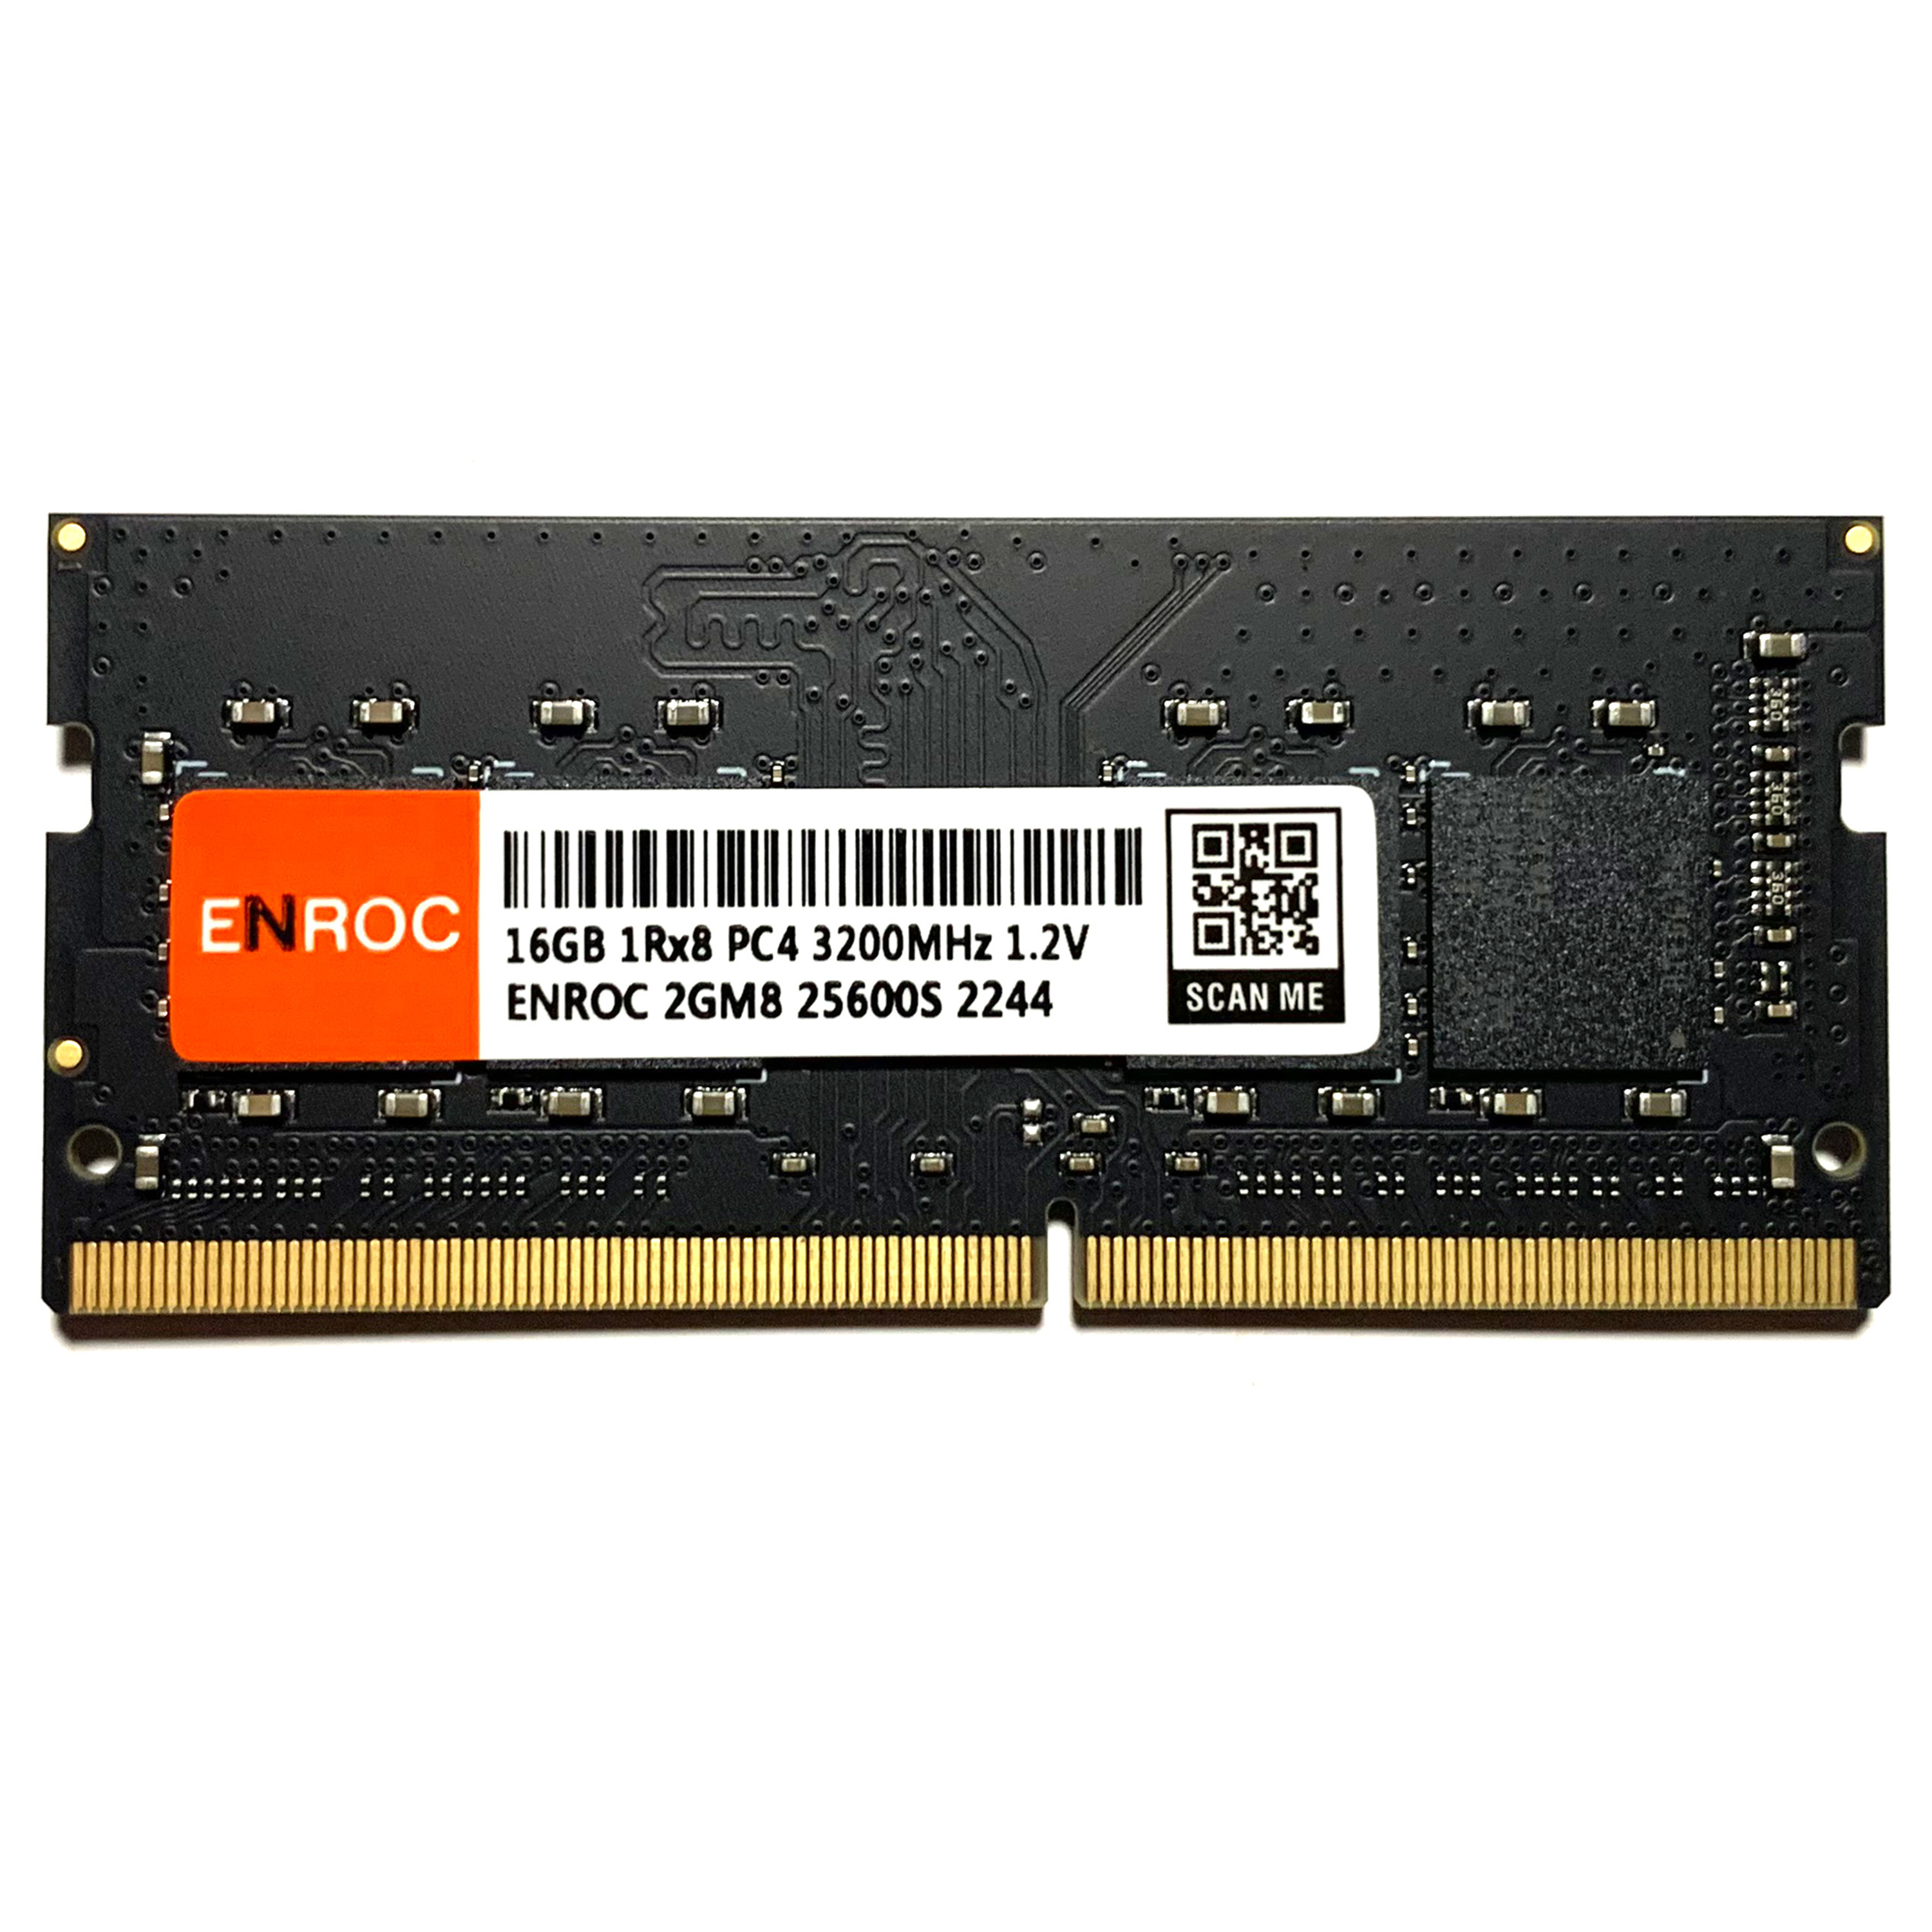 ENROC ERC880 32GB MHz 3200 DDR4 DDR4 SO-DIMM Kit GB (2x16GB) RAM 32 Arbeitsspeicher